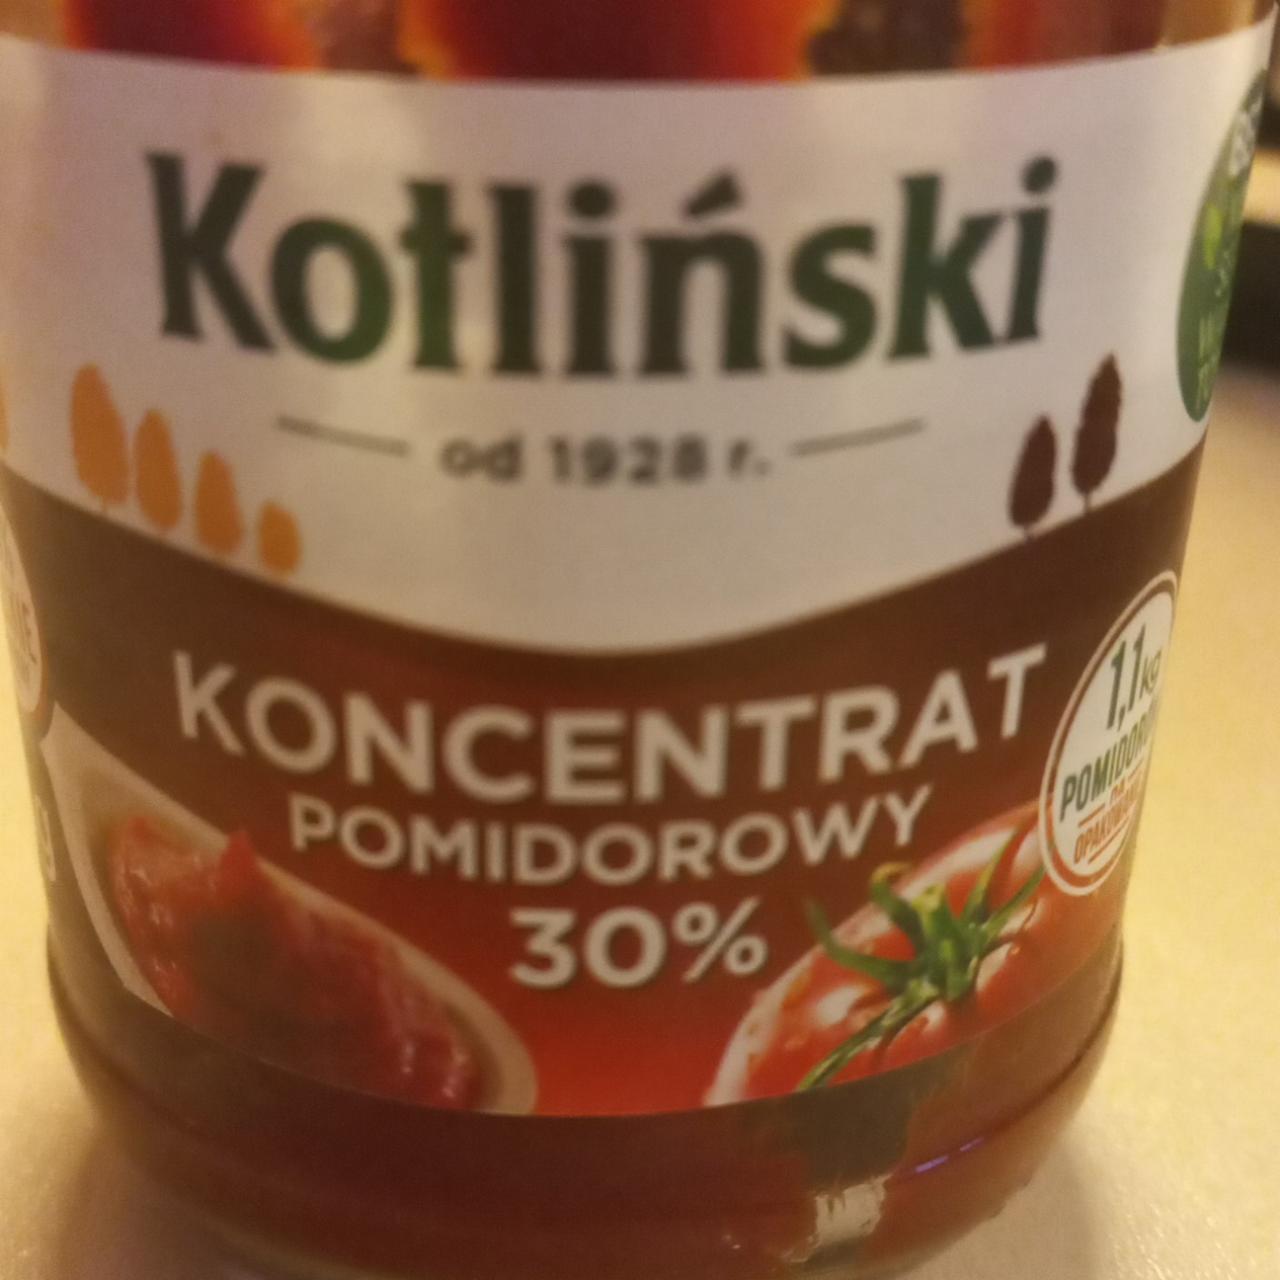 Zdjęcia - Koncentrat pomidorowy 30% Kotliński